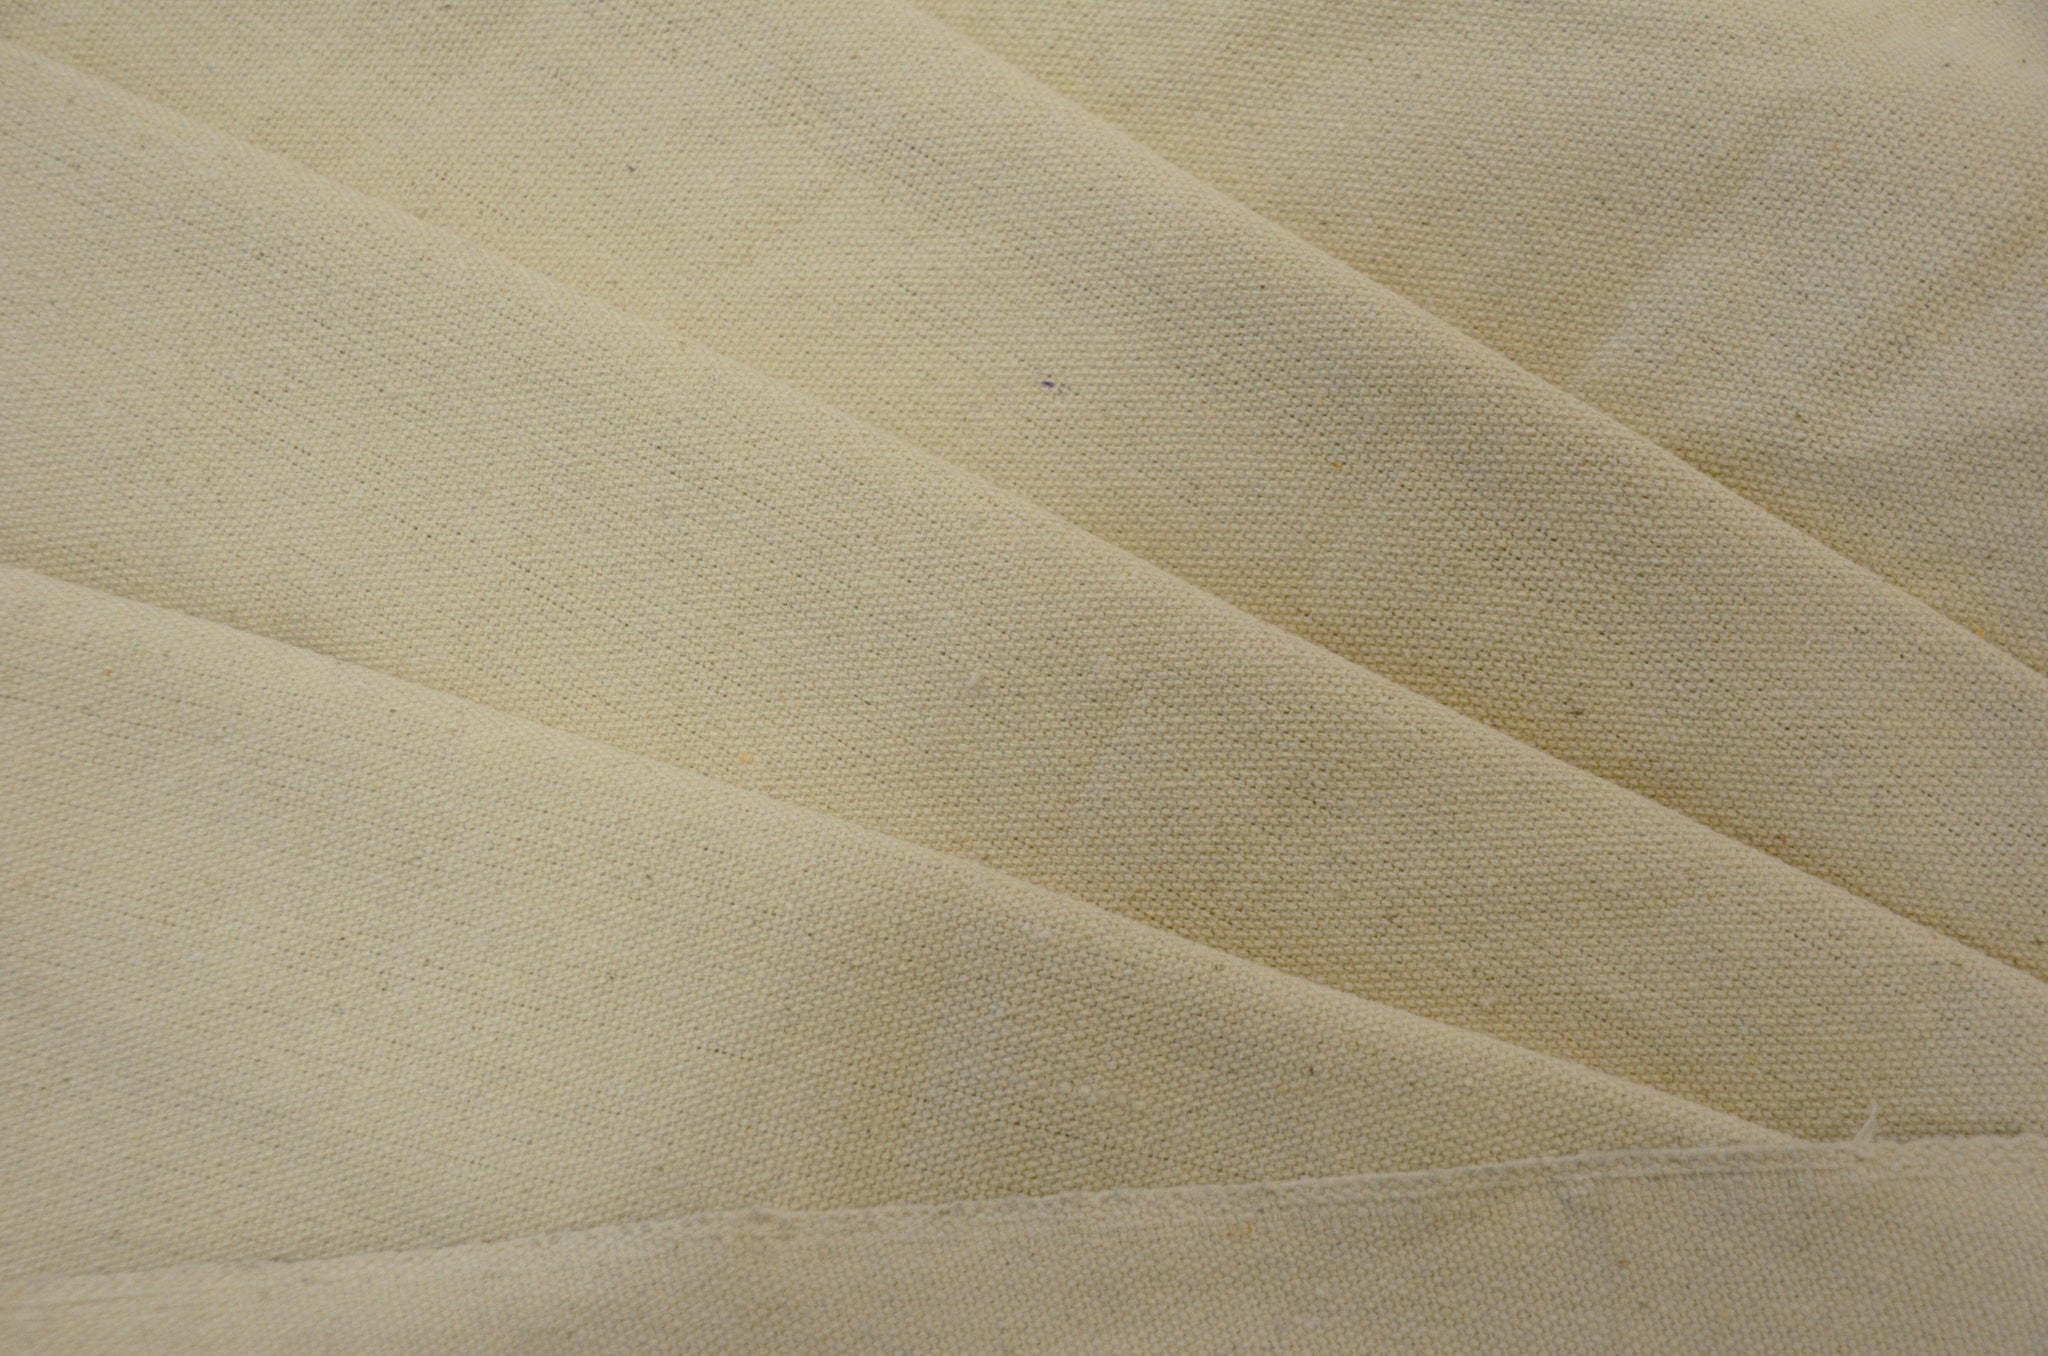 Natural Cotton Canvas Fabric, 100% Cotton, 10 oz Duck Canvas